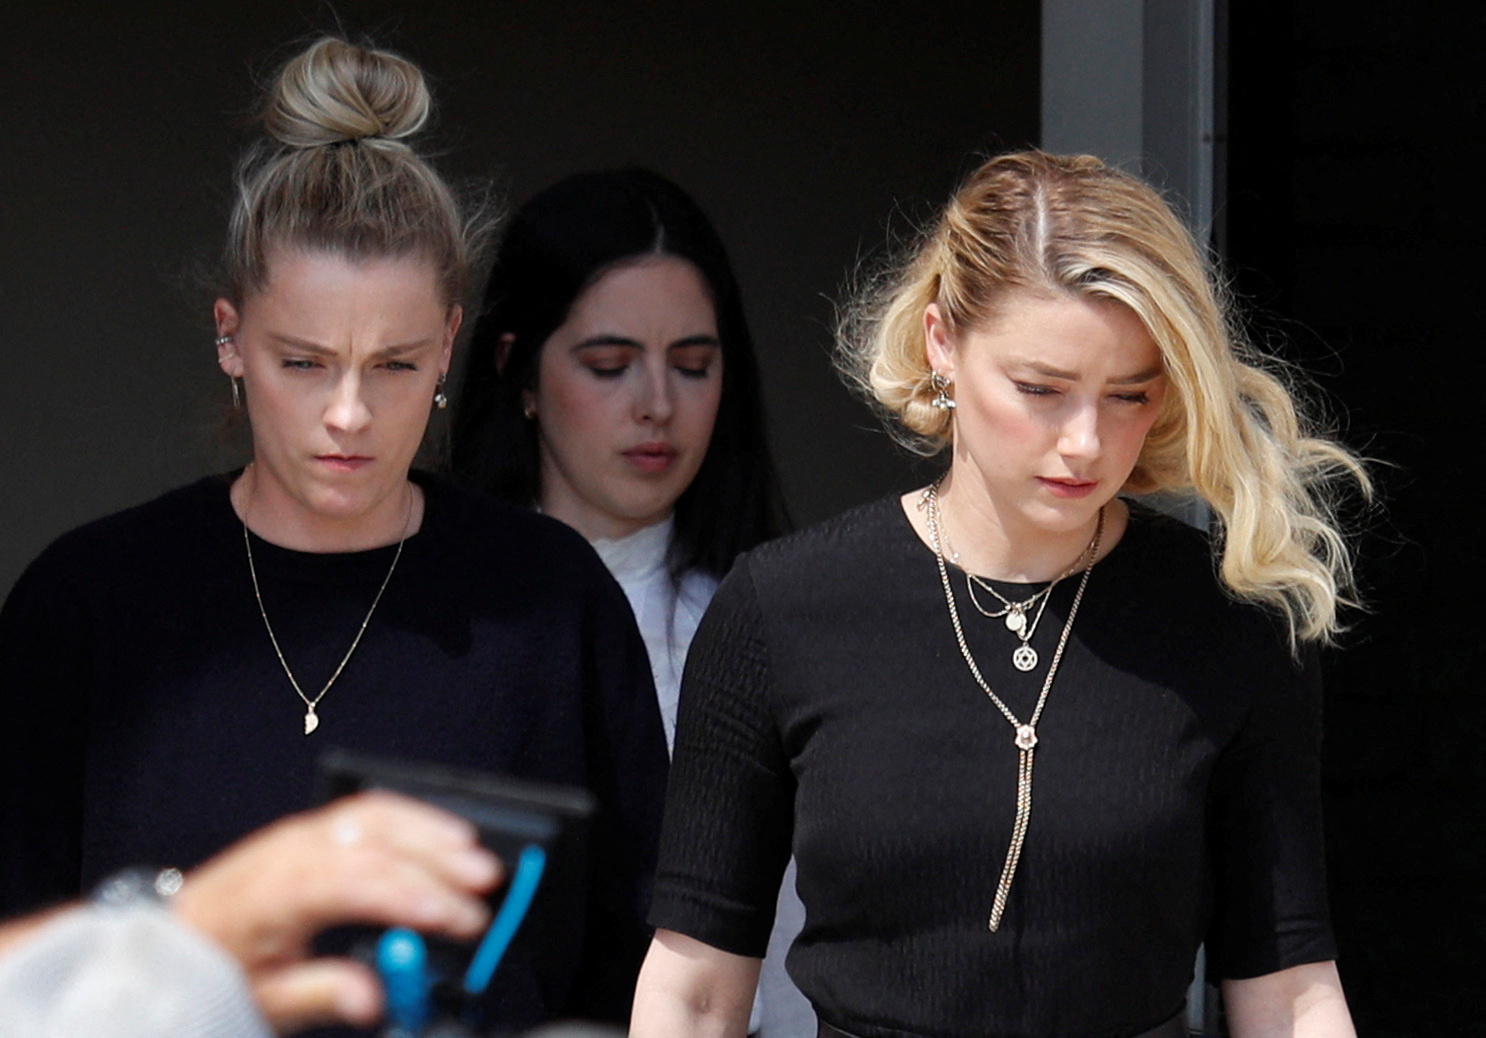 El jurado determinó que Johnny Depp y Amber Heard se difamaron mutuamente (REUTERS/Tom Brenner)